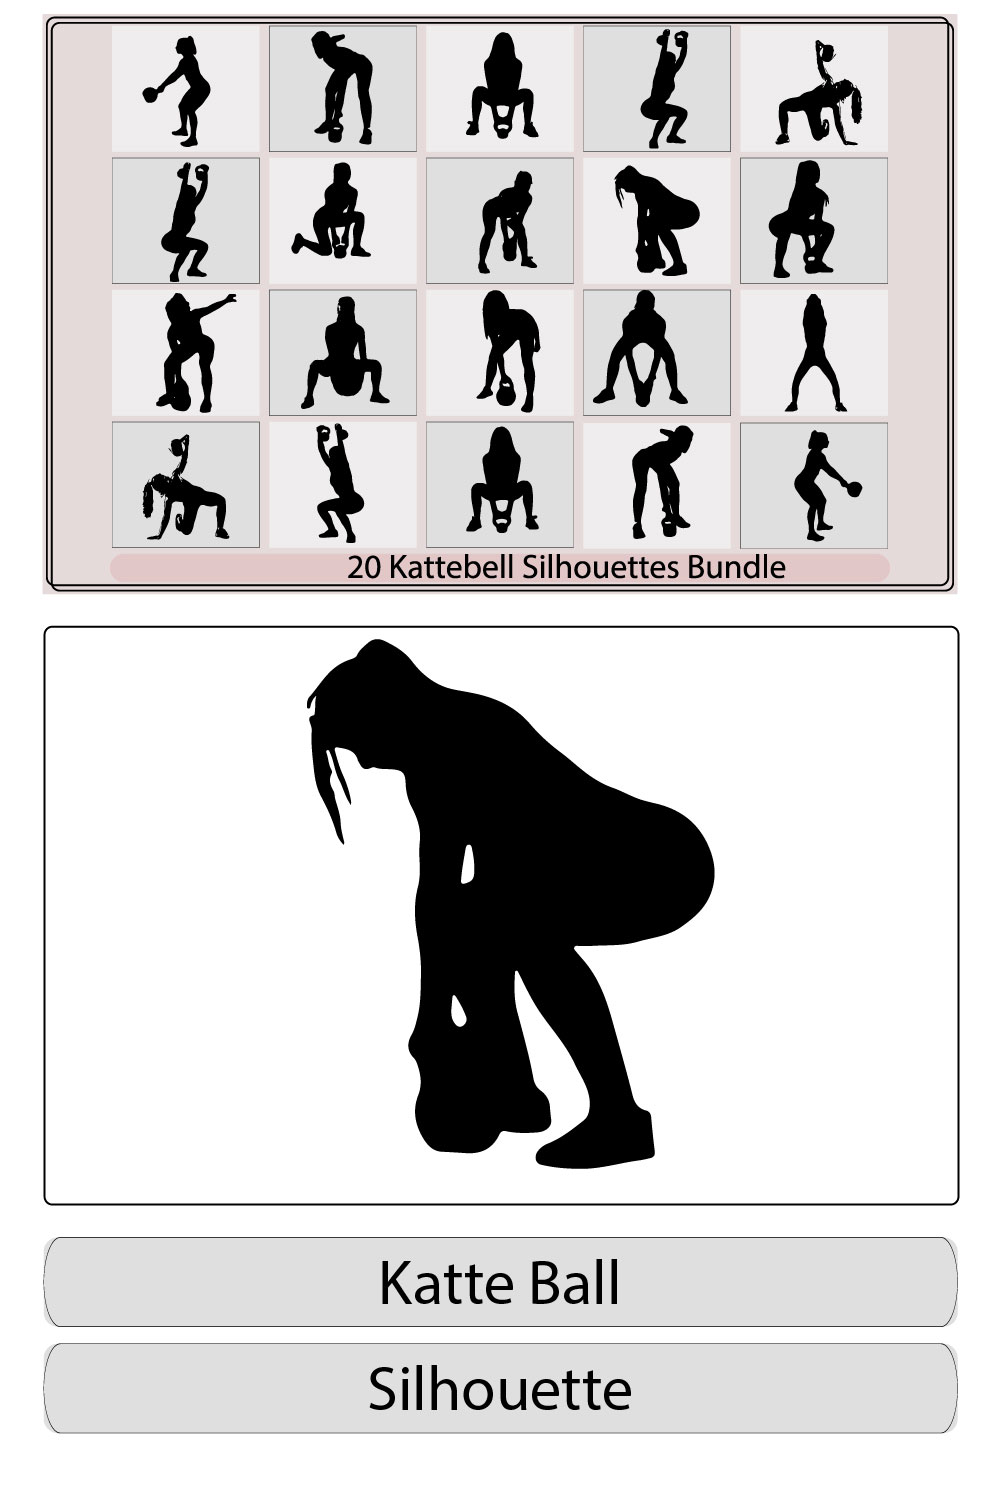 kattlebell silhouette,kattlebell silhouette bundle,kattlebell illustration,kattlebell vector, pinterest preview image.